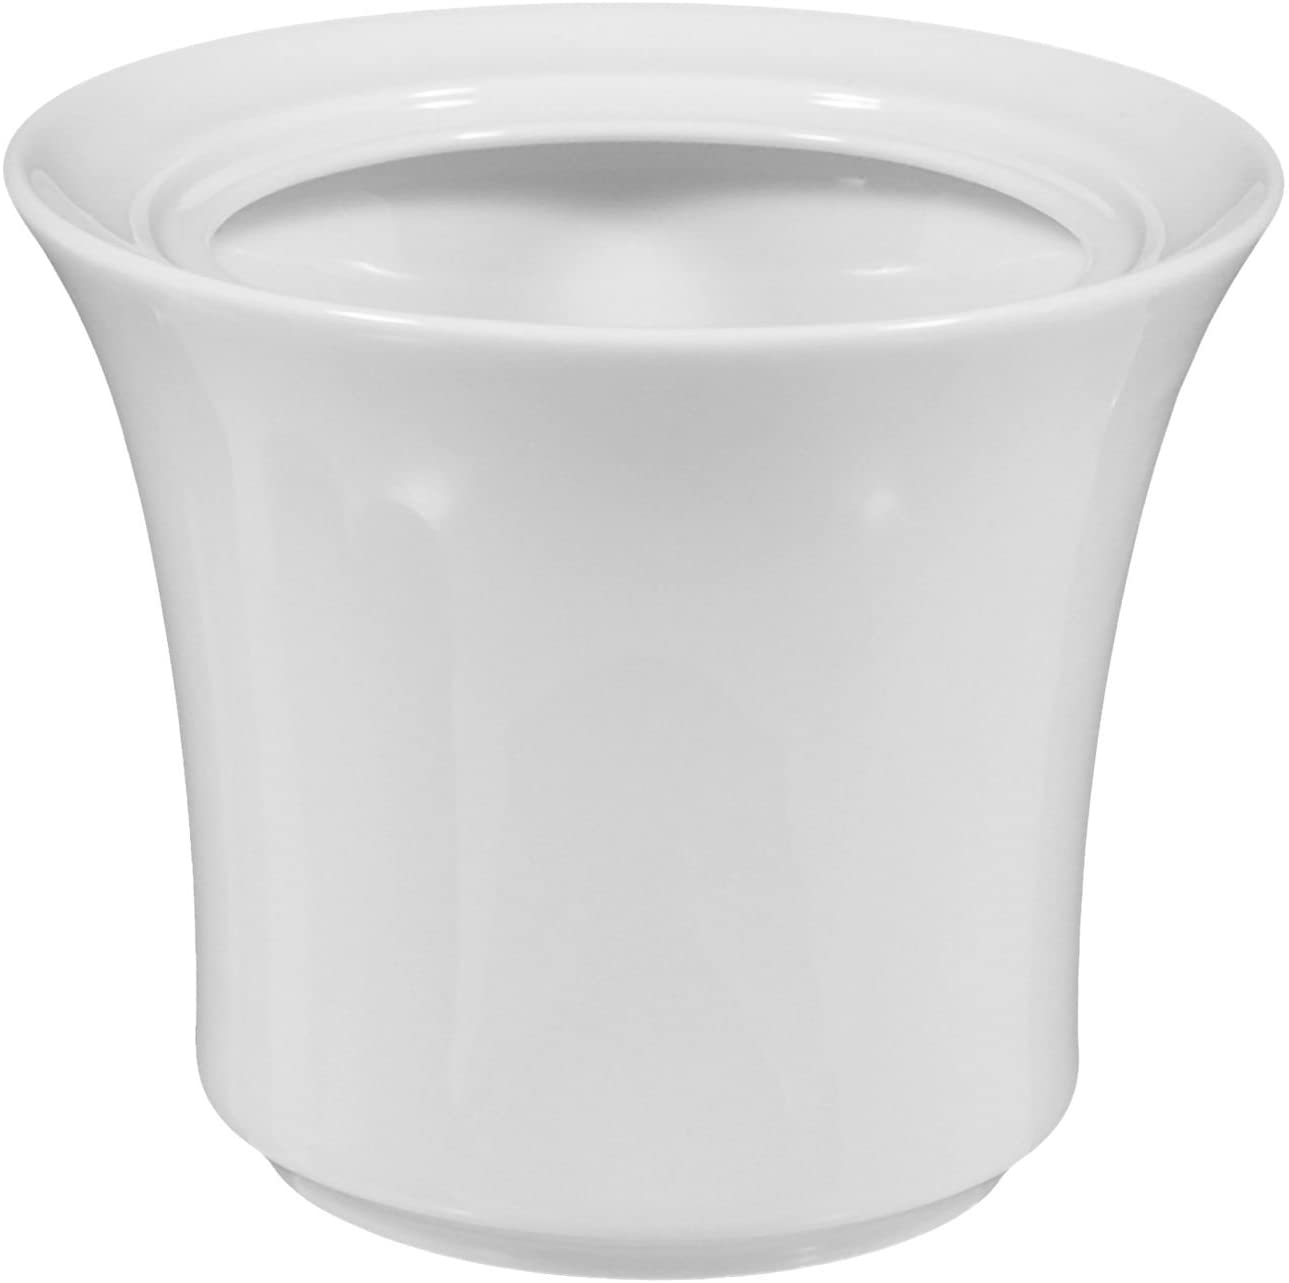 Sugar Bowl 9.6 cm Savoy White Universal 00003 by Seltmann Weiden